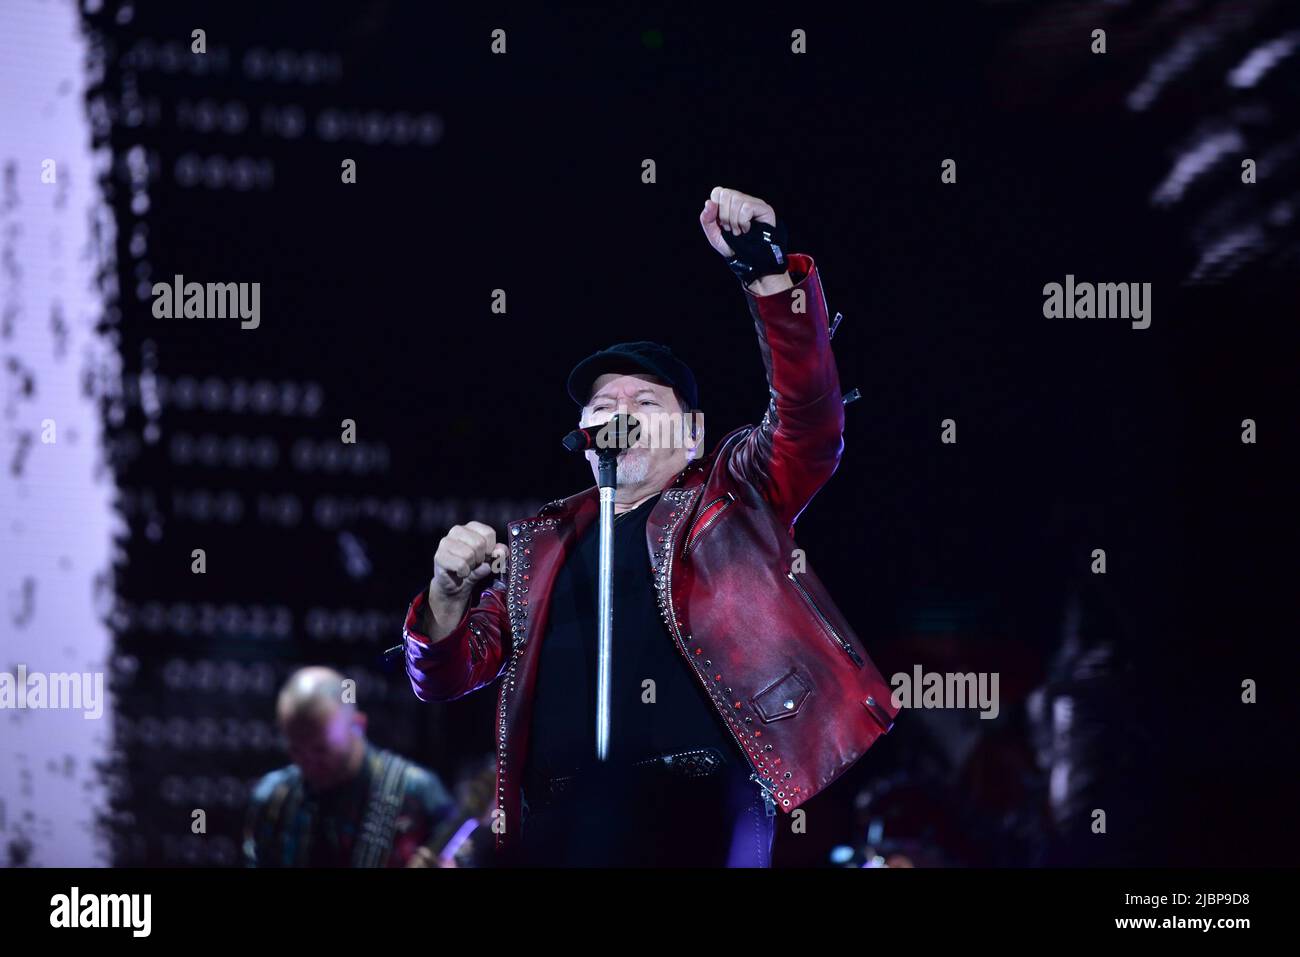 Naples, Italie. 7th juin 2022. Le chanteur italien Vasco Rossi se produit au stade Diego Maradona avec sa tournée en direct 2022 à Naples. (Image de crédit: © Paola Visone/Pacific Press via ZUMA Press Wire) Banque D'Images